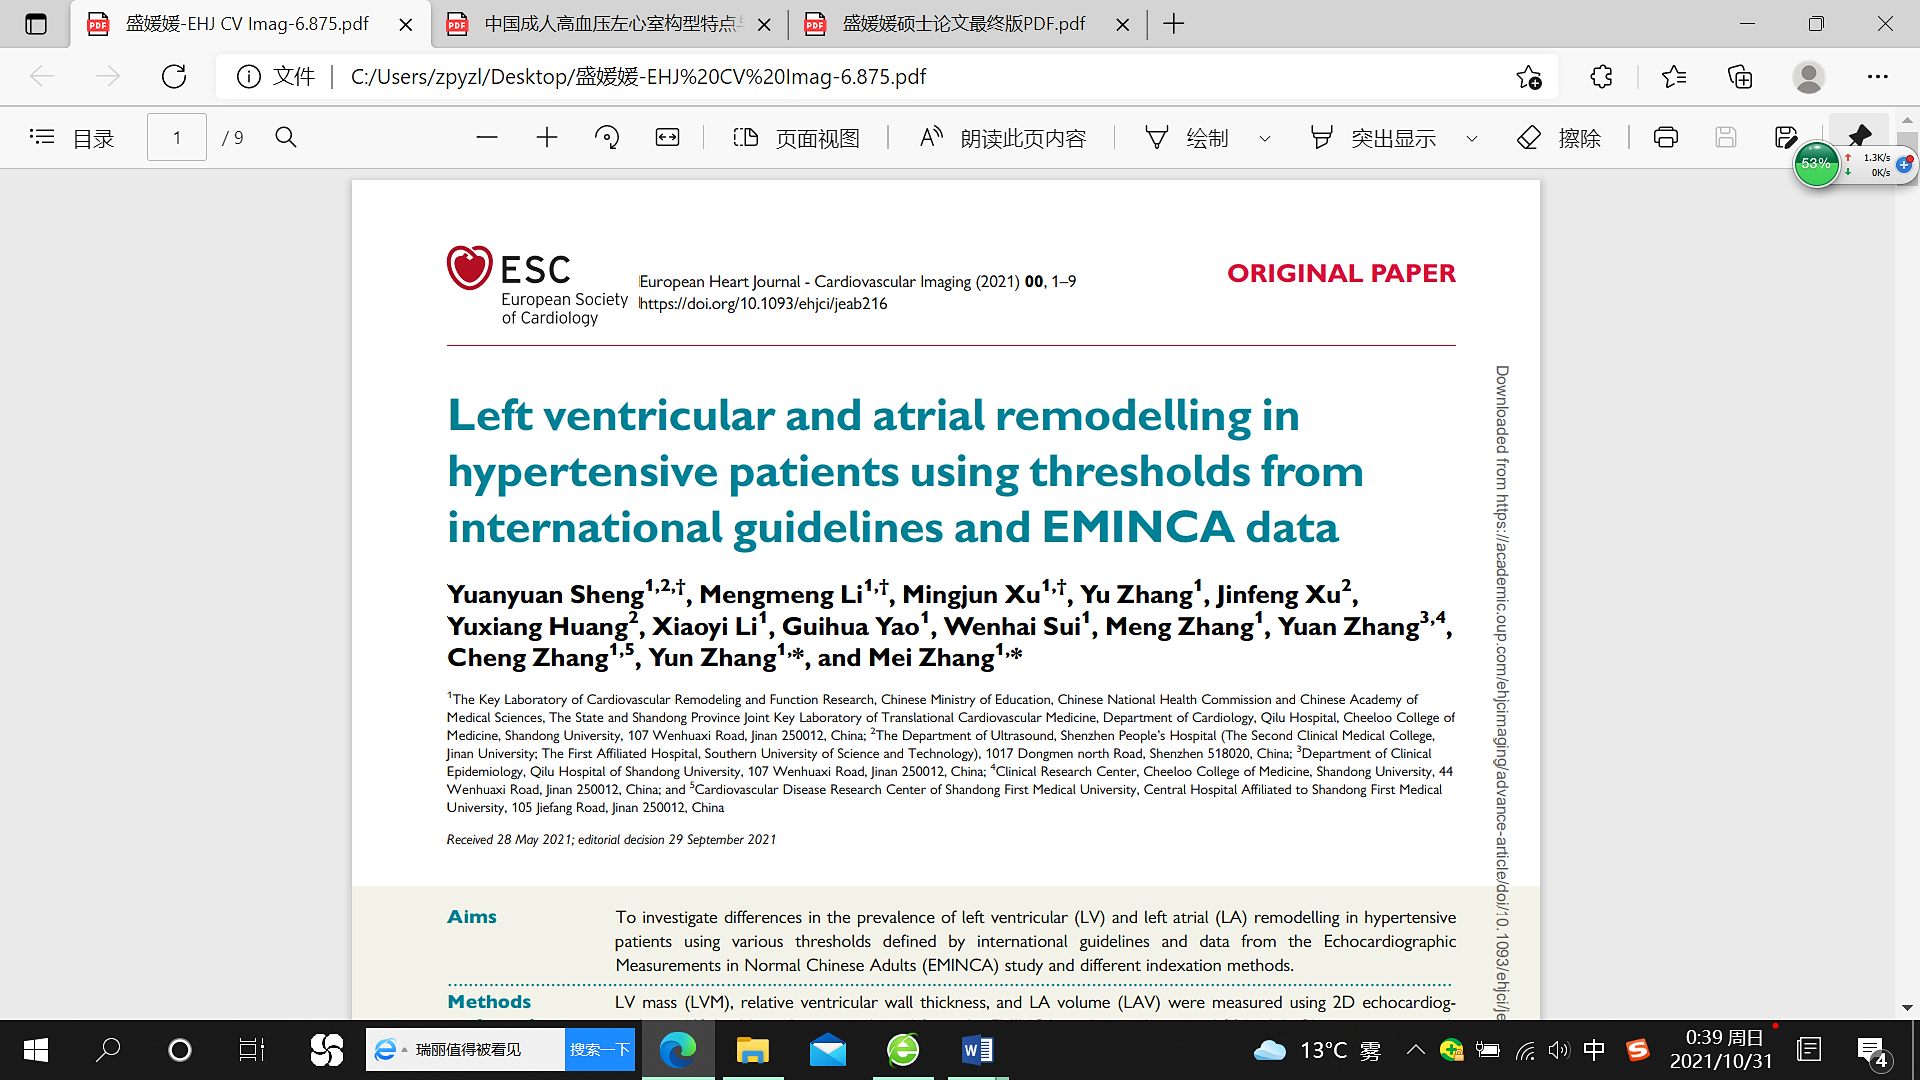 01)报告了中国健康成人超声心动图正常值的大样本,多中心研究(eminca)